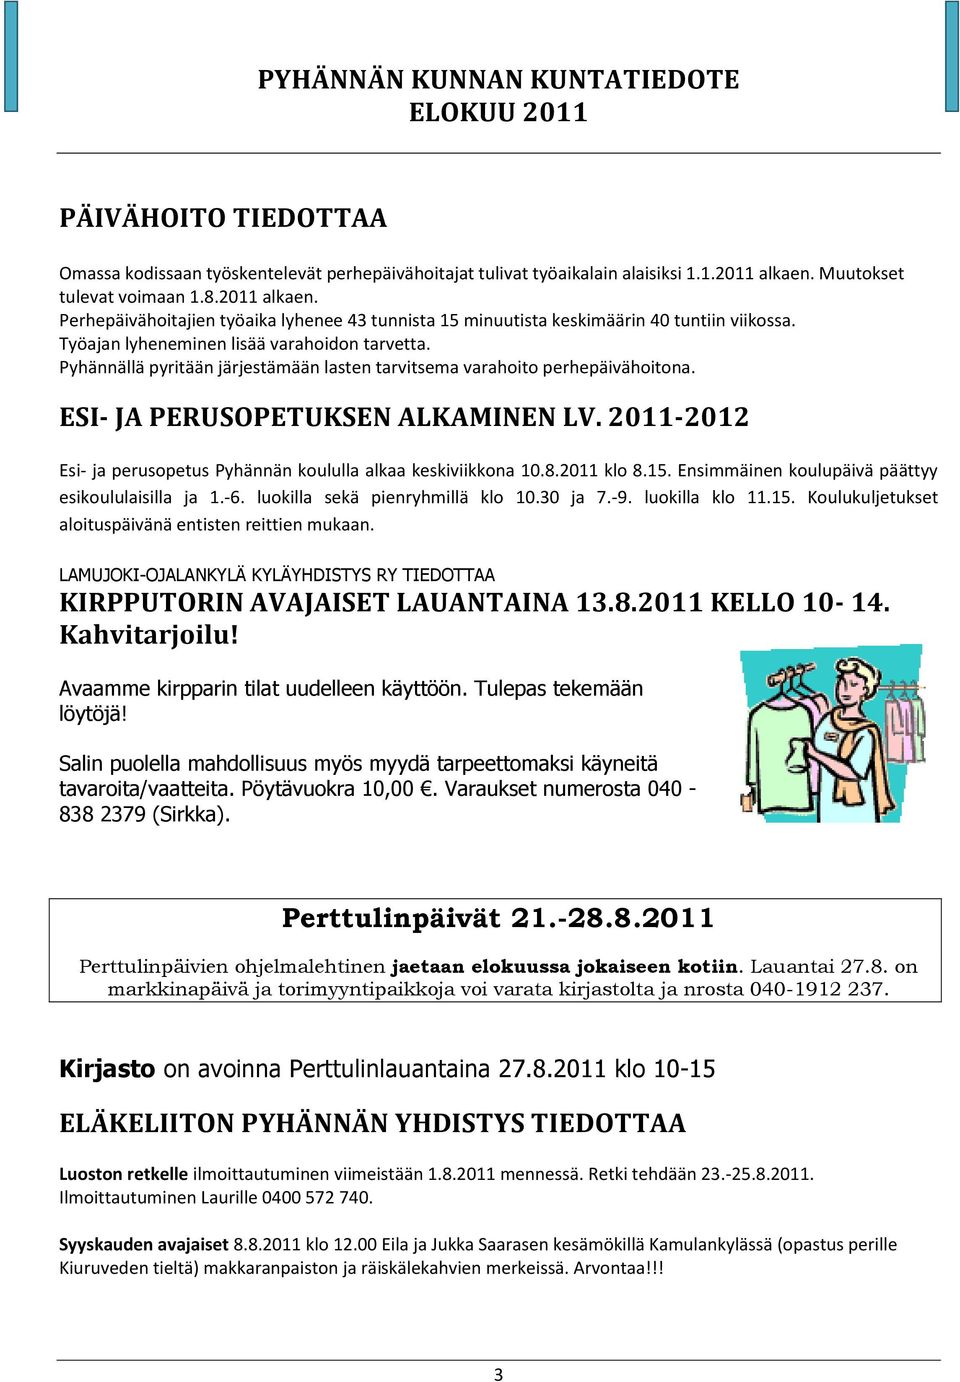 Pyhännällä pyritään järjestämään lasten tarvitsema varahoito perhepäivähoitona. ESI- JA PERUSOPETUKSEN ALKAMINEN LV. 2011-2012 Esi- ja perusopetus Pyhännän koululla alkaa keskiviikkona 10.8.